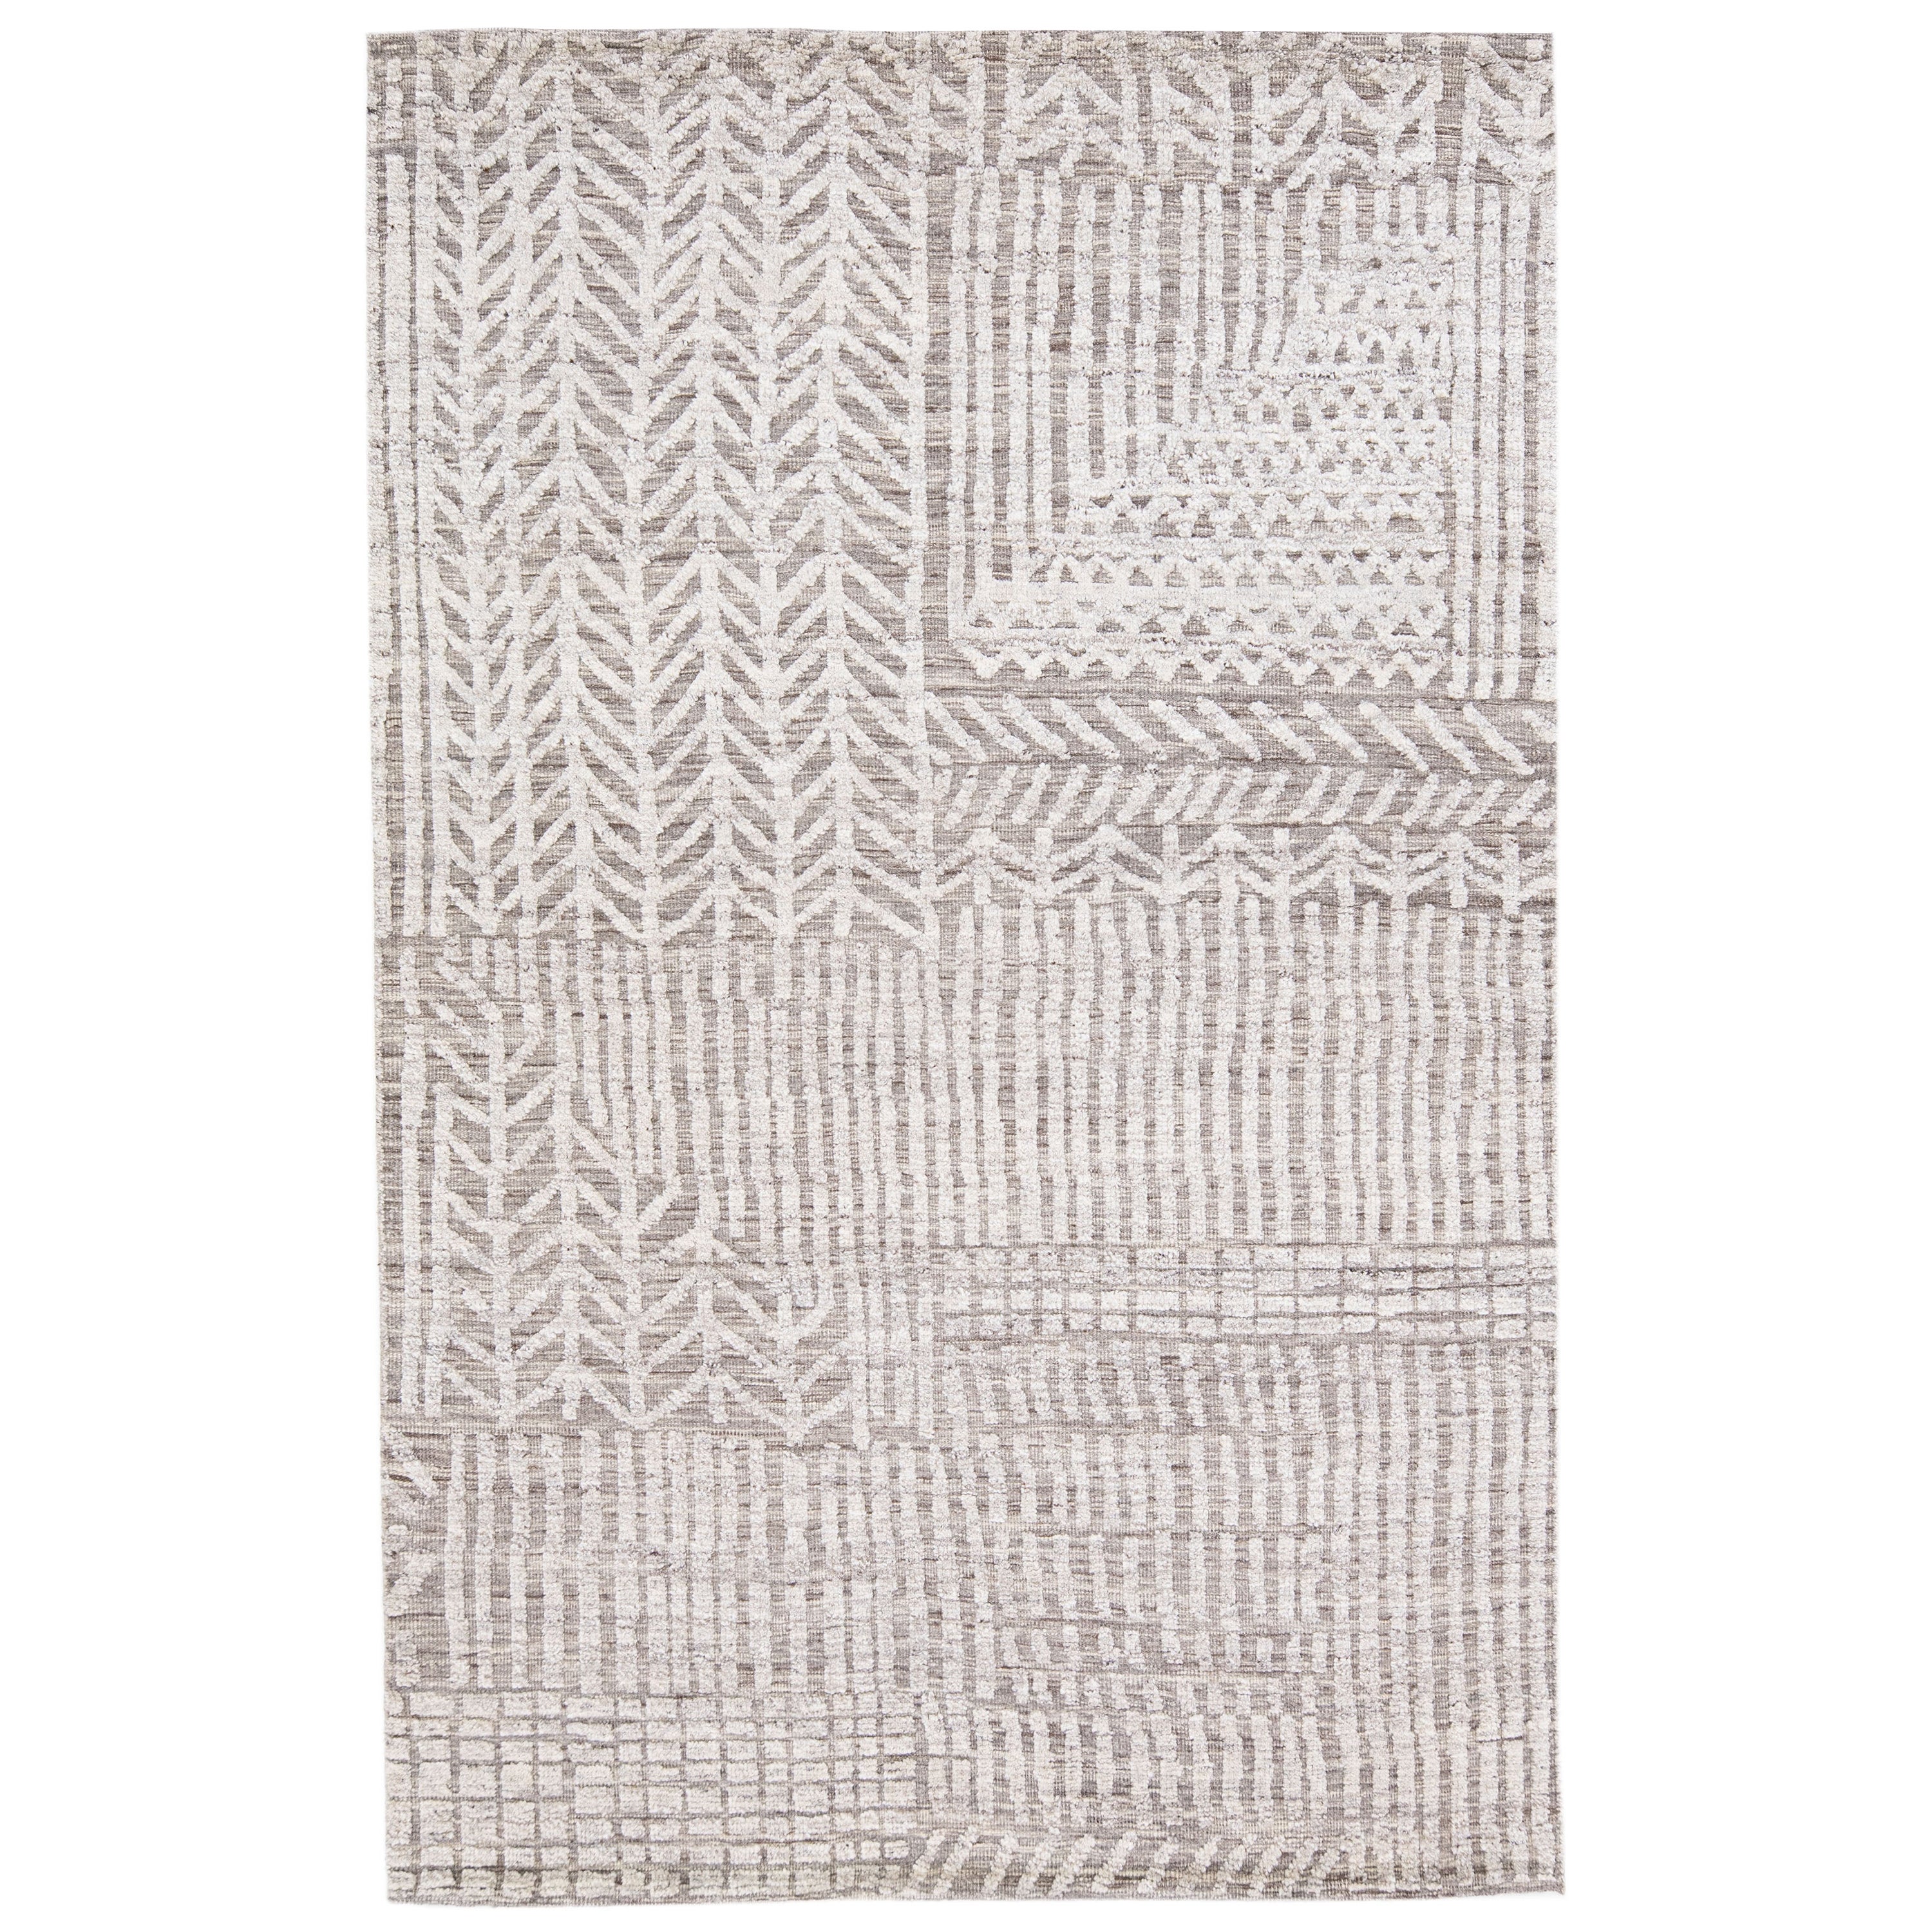  Tapis en laine grise de style marocain moderne et abstrait fait à la main par Apadana